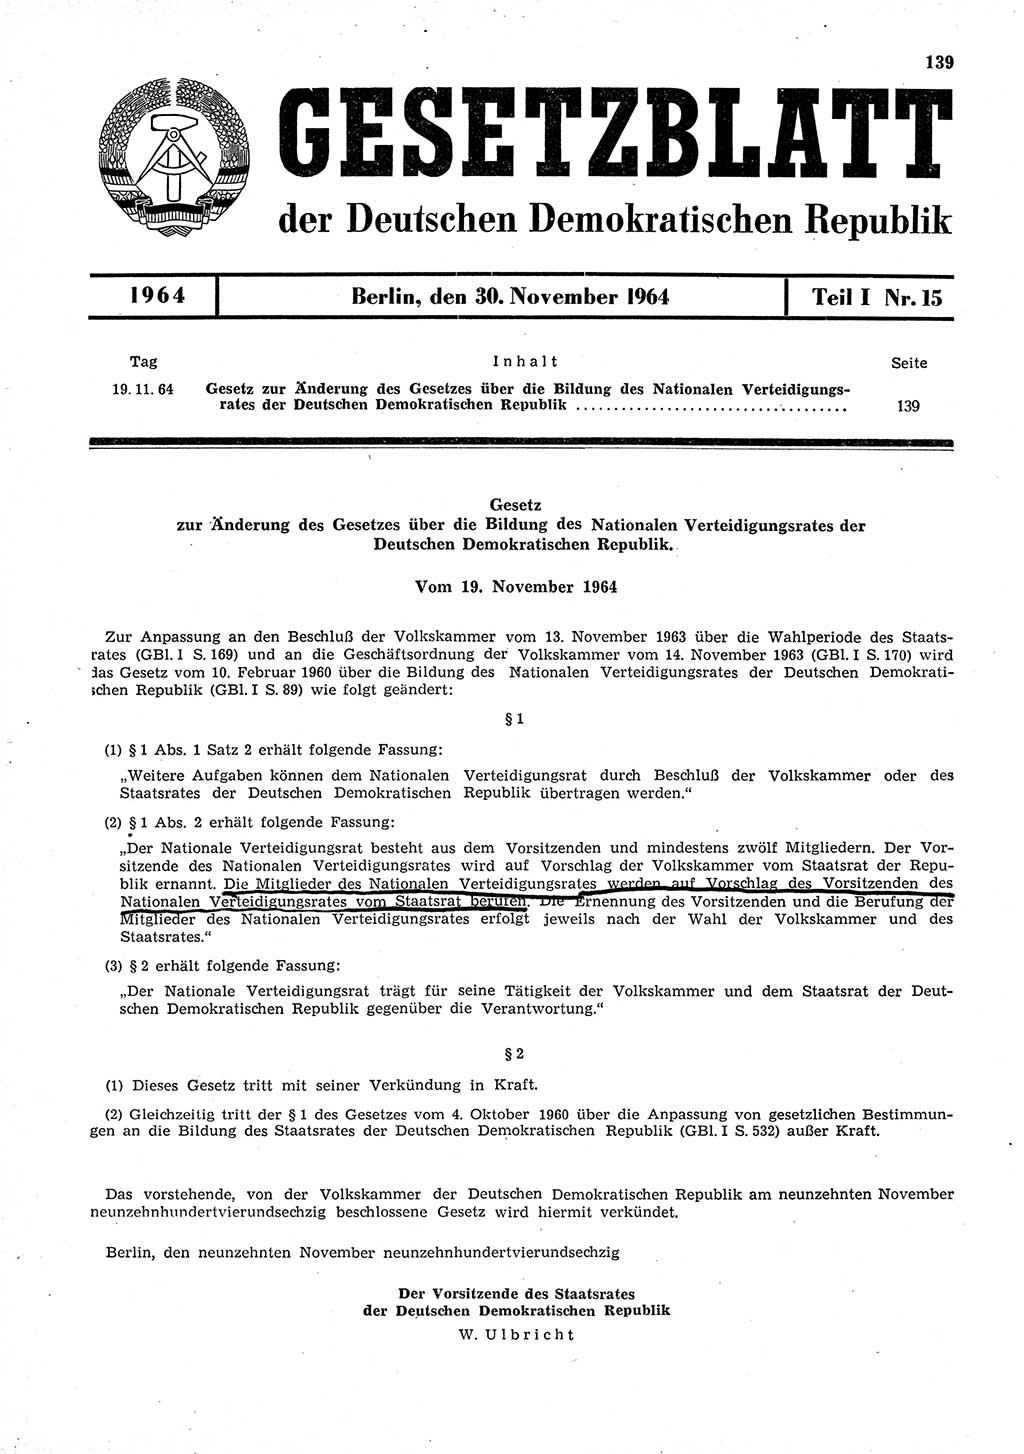 Gesetzblatt (GBl.) der Deutschen Demokratischen Republik (DDR) Teil Ⅰ 1964, Seite 139 (GBl. DDR Ⅰ 1964, S. 139)